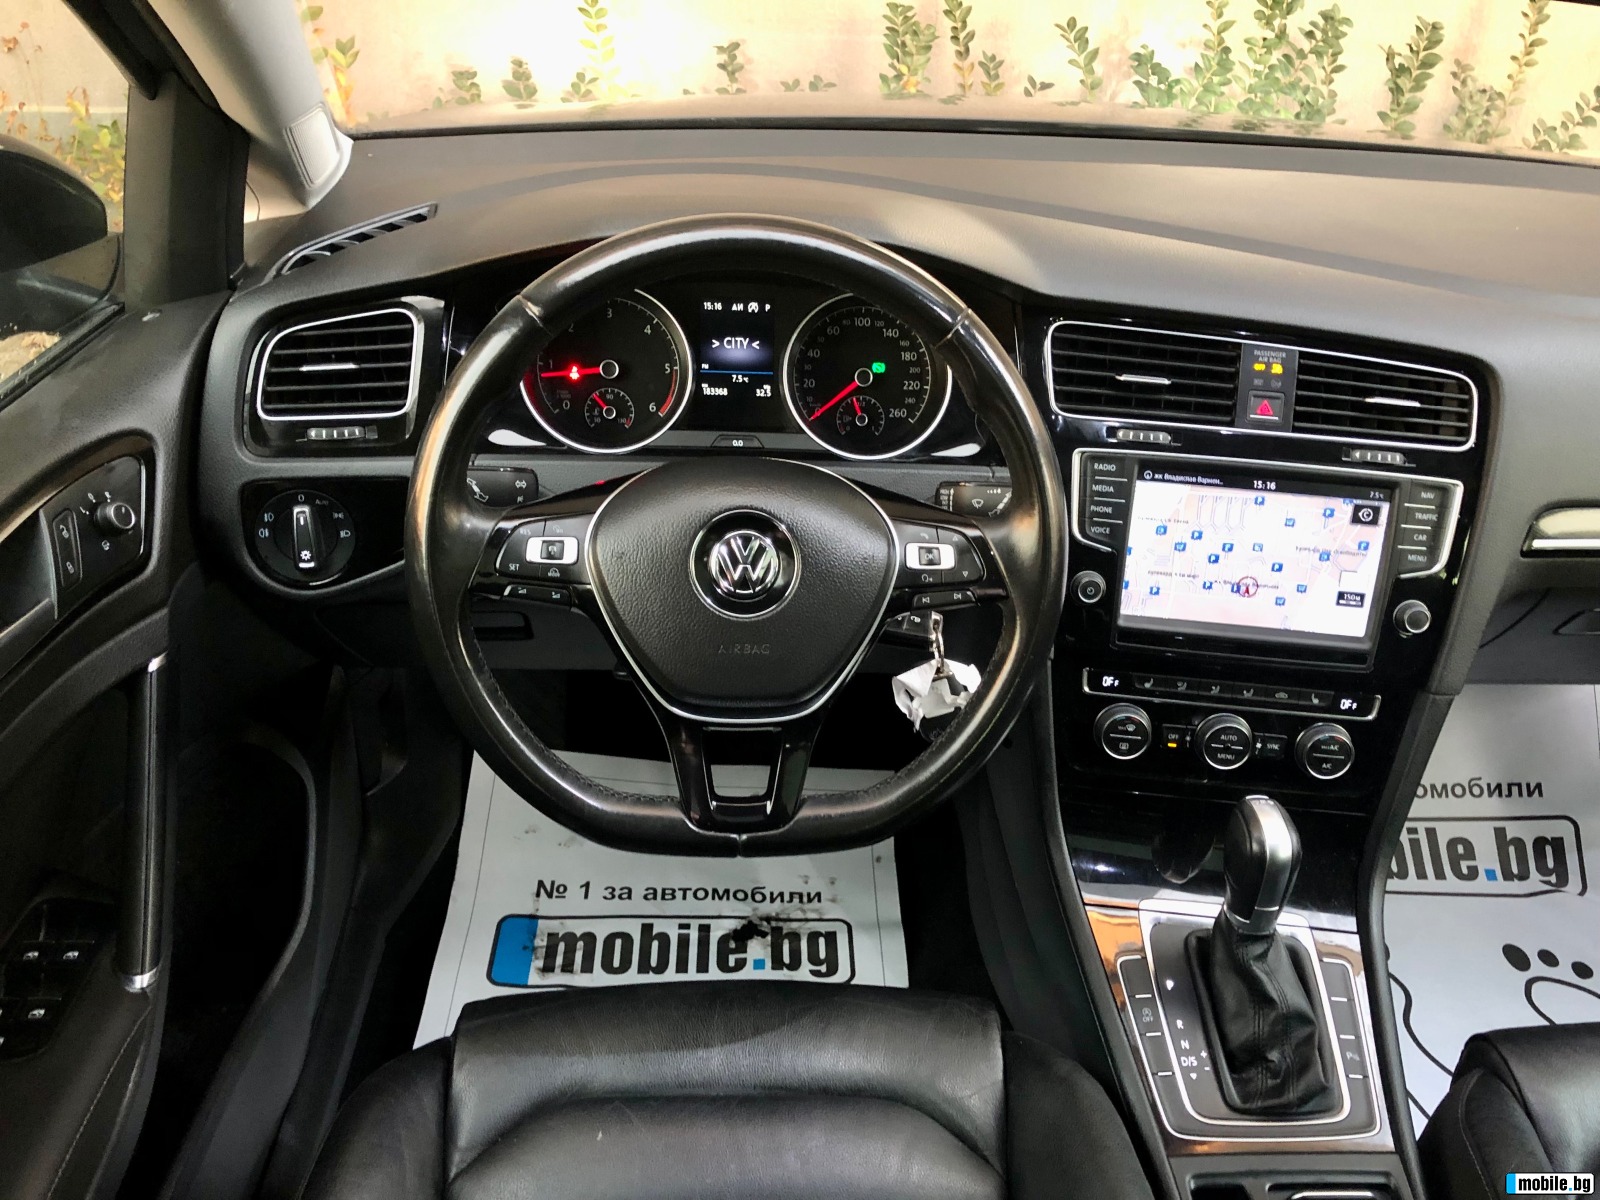 VW Golf 2.0 avtomat | Mobile.bg   10